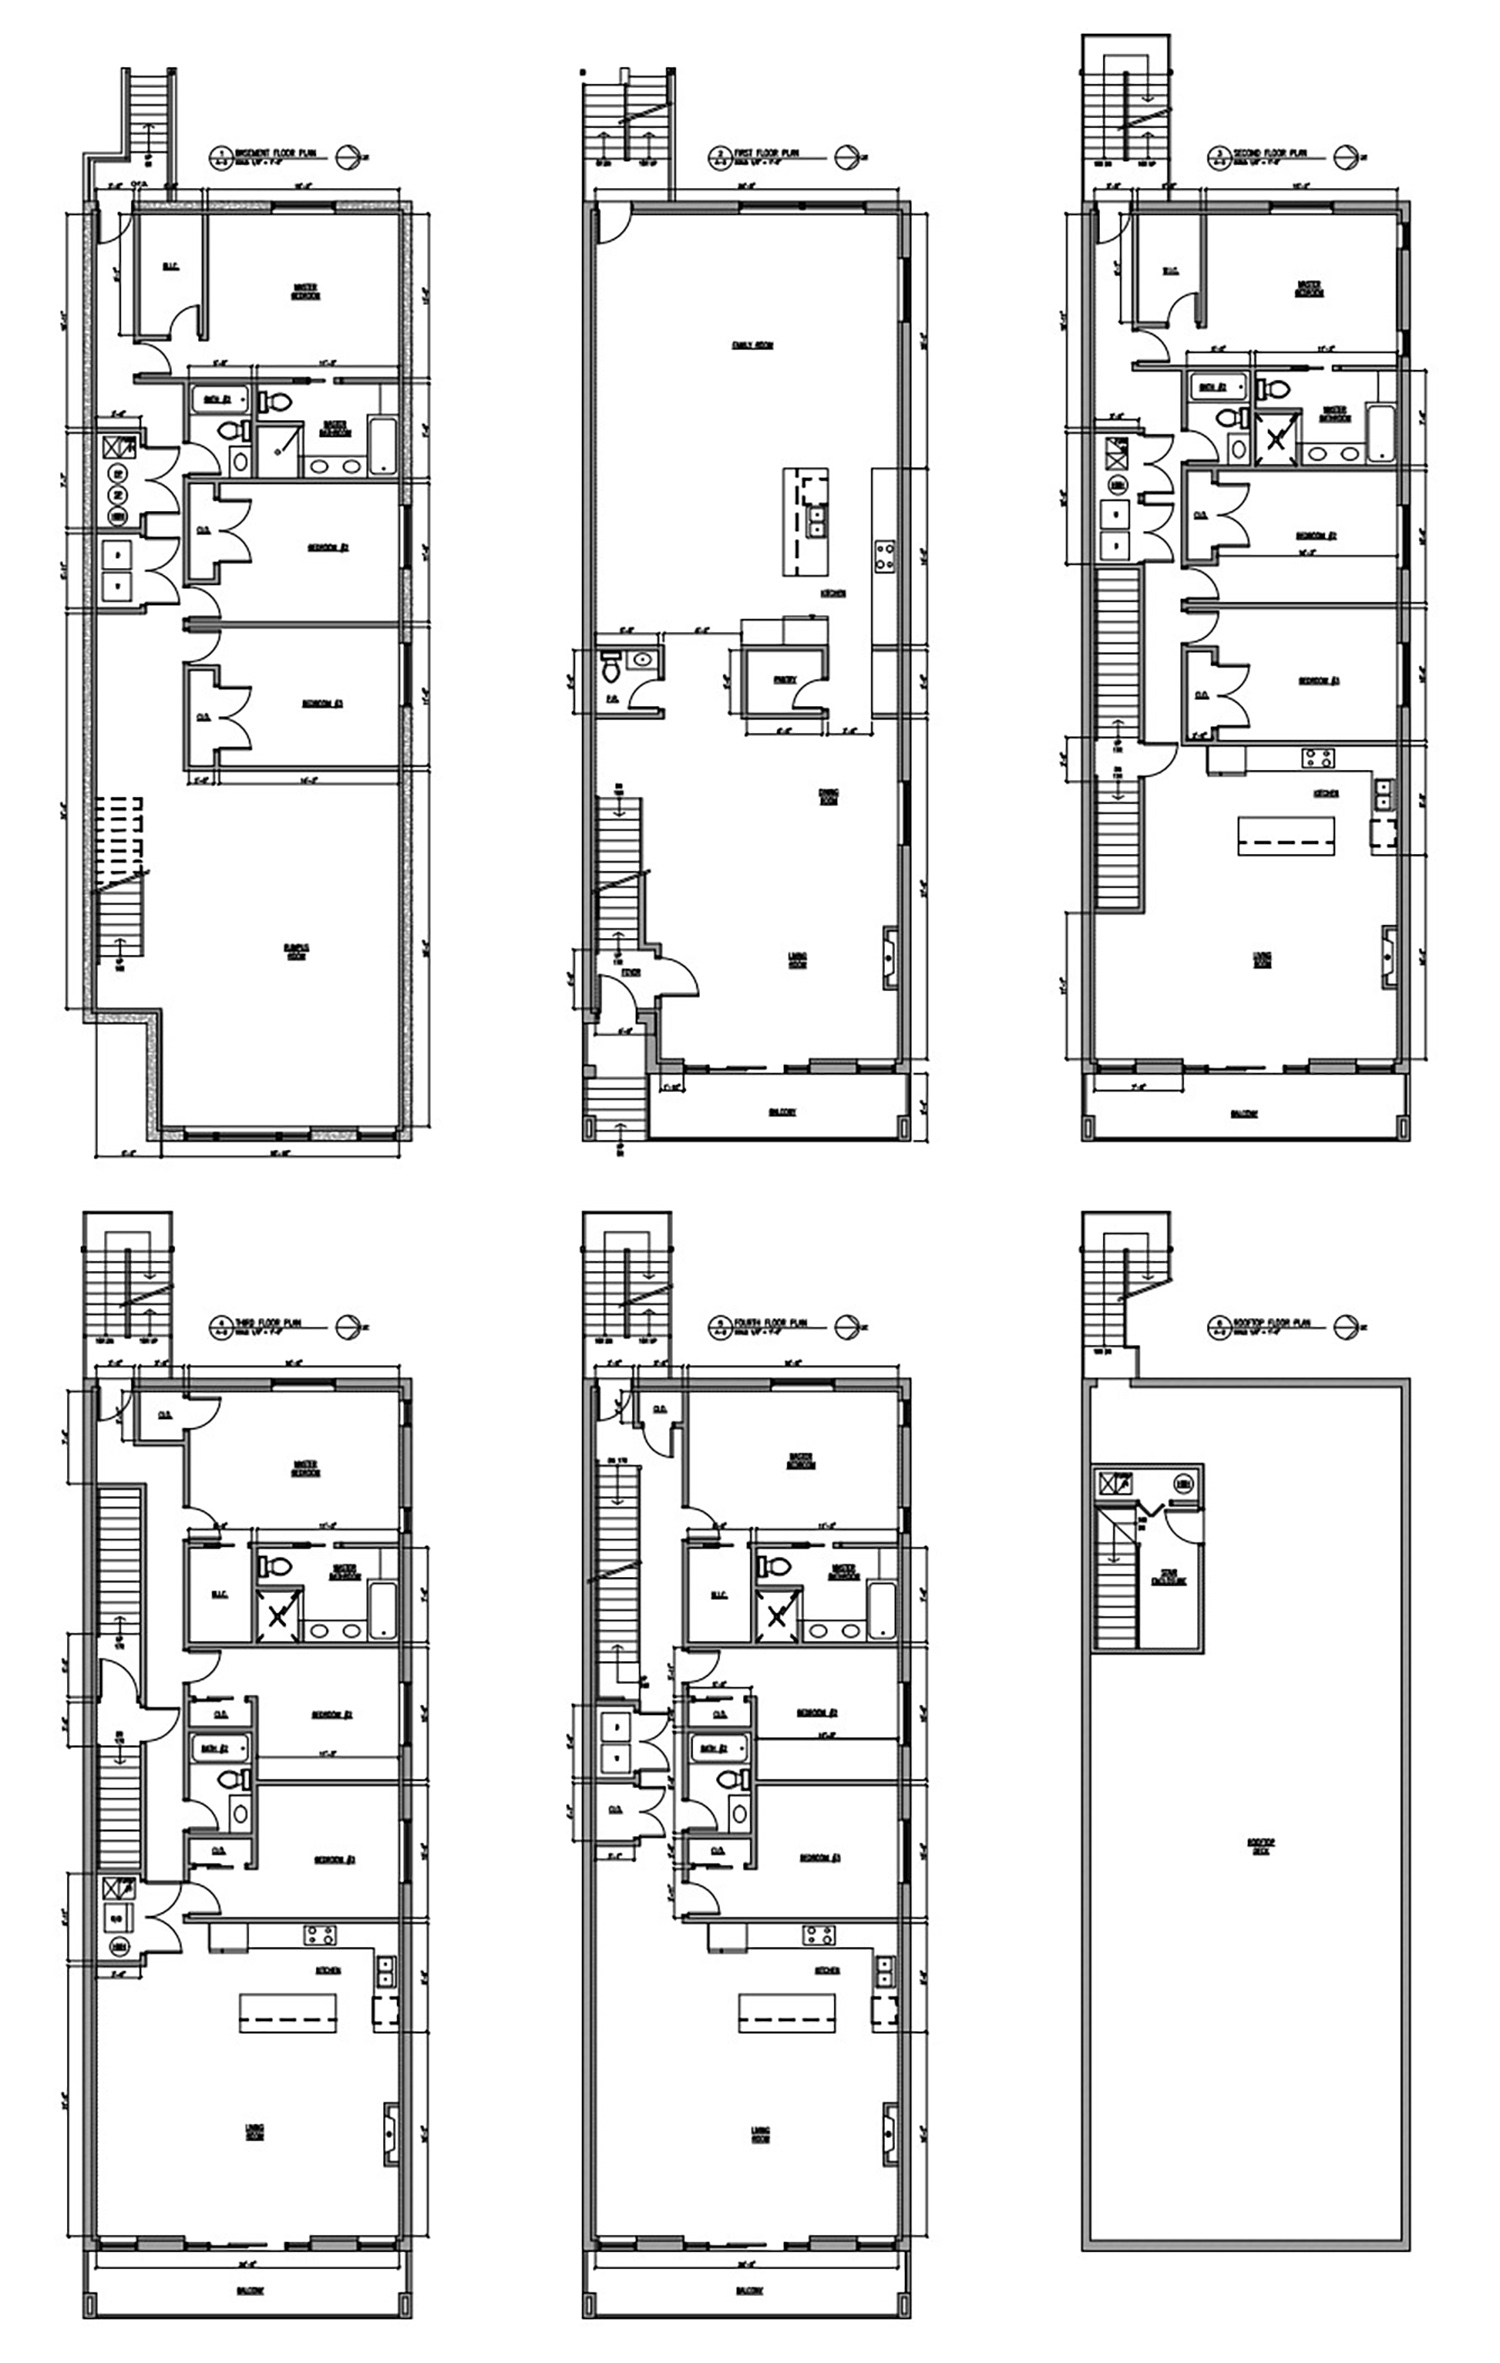 Floor Plans for 5040 N Western Avenue. Drawings by Eduard Livanu